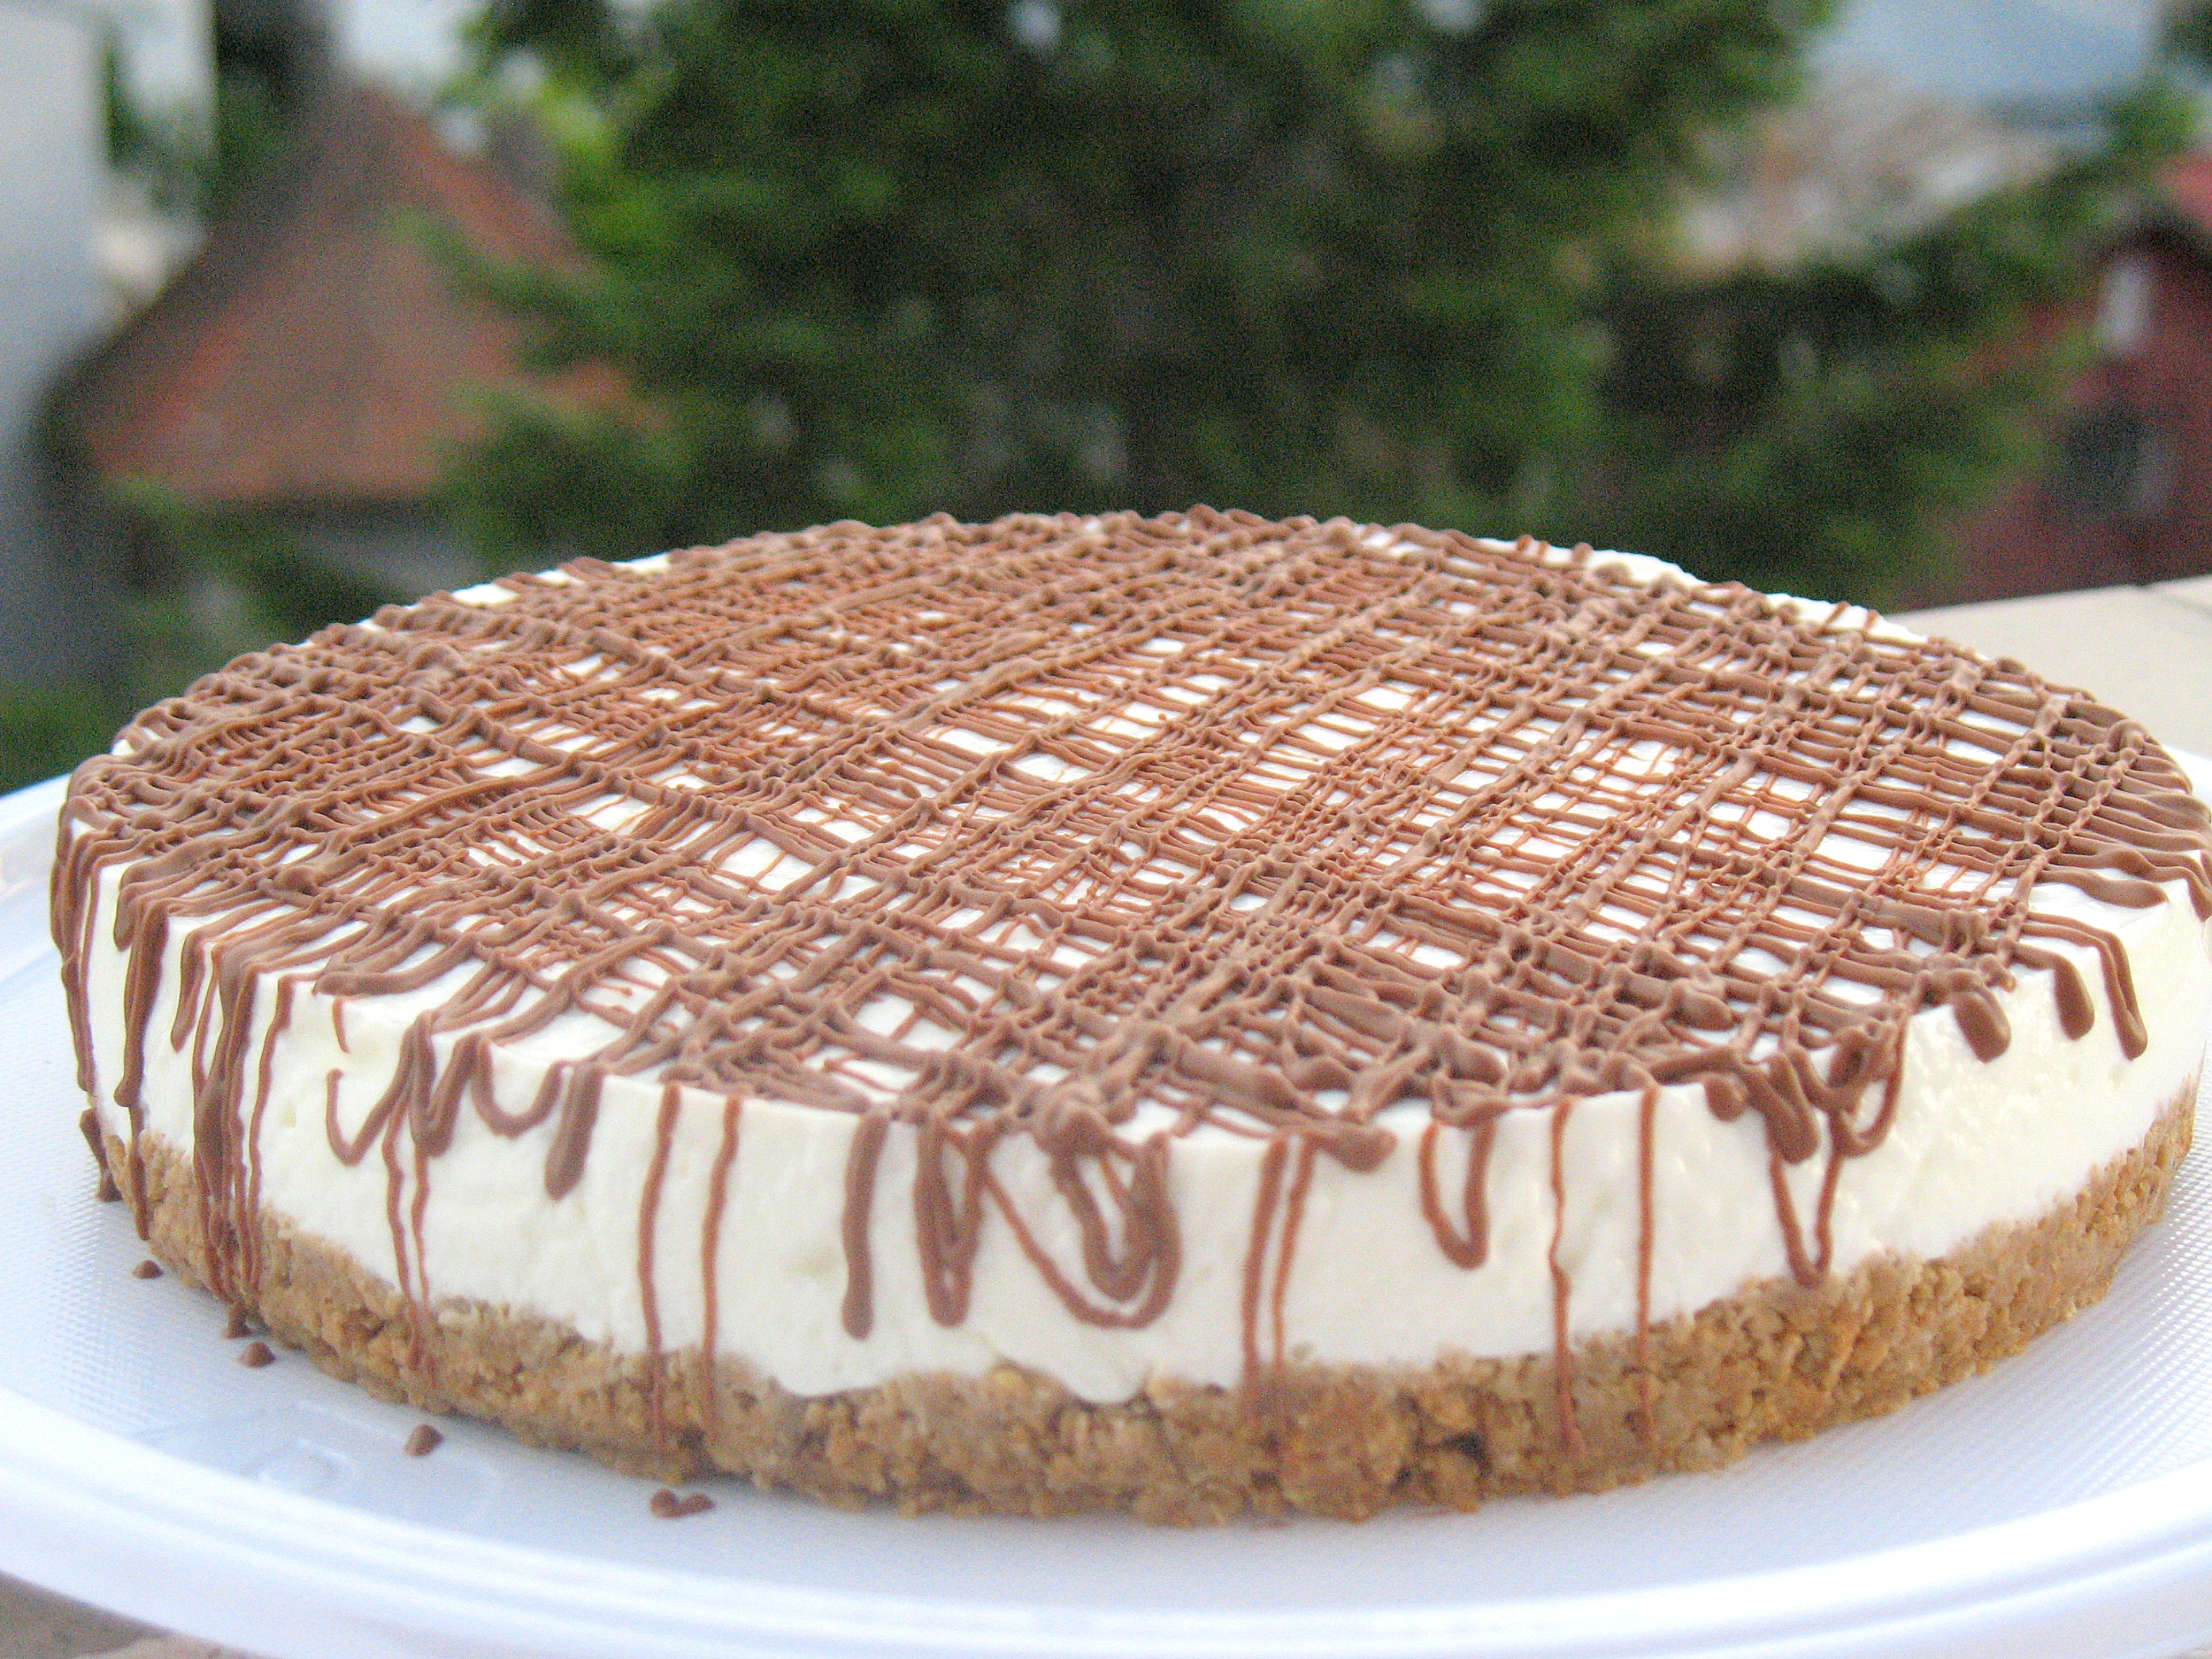 Cheesecake dietetic cu biscuiti - Dukan